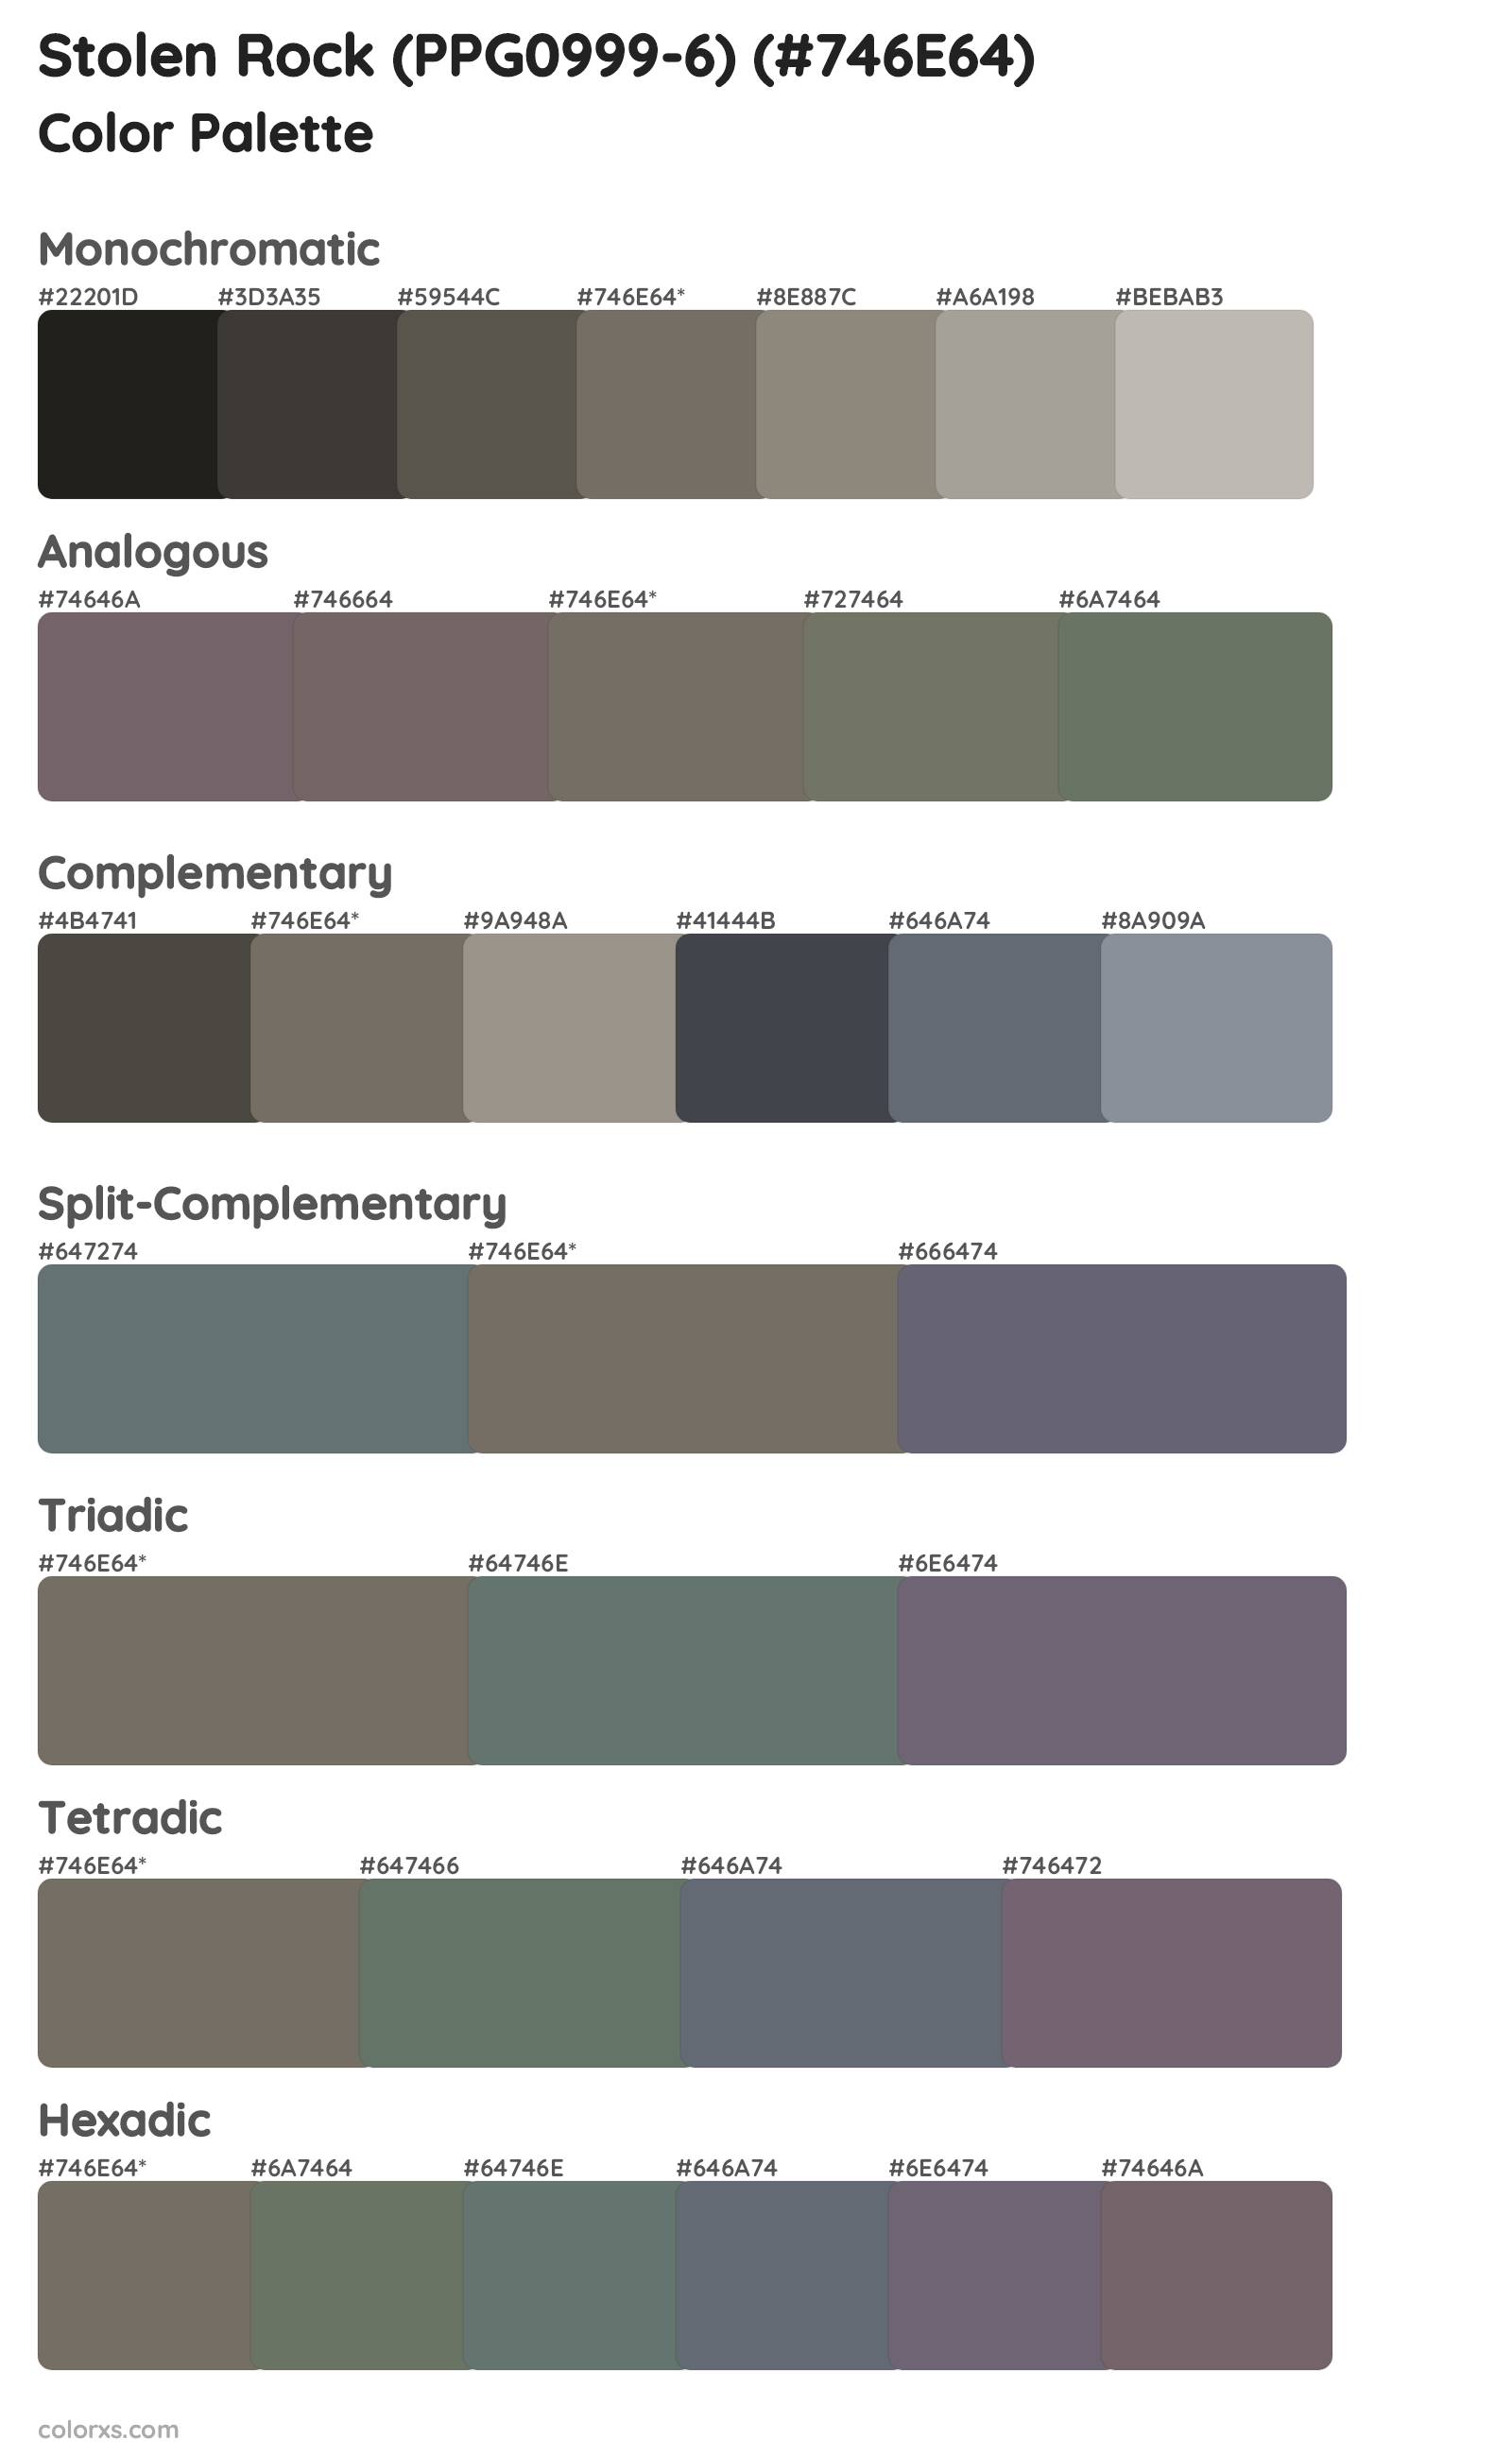 Stolen Rock (PPG0999-6) Color Scheme Palettes